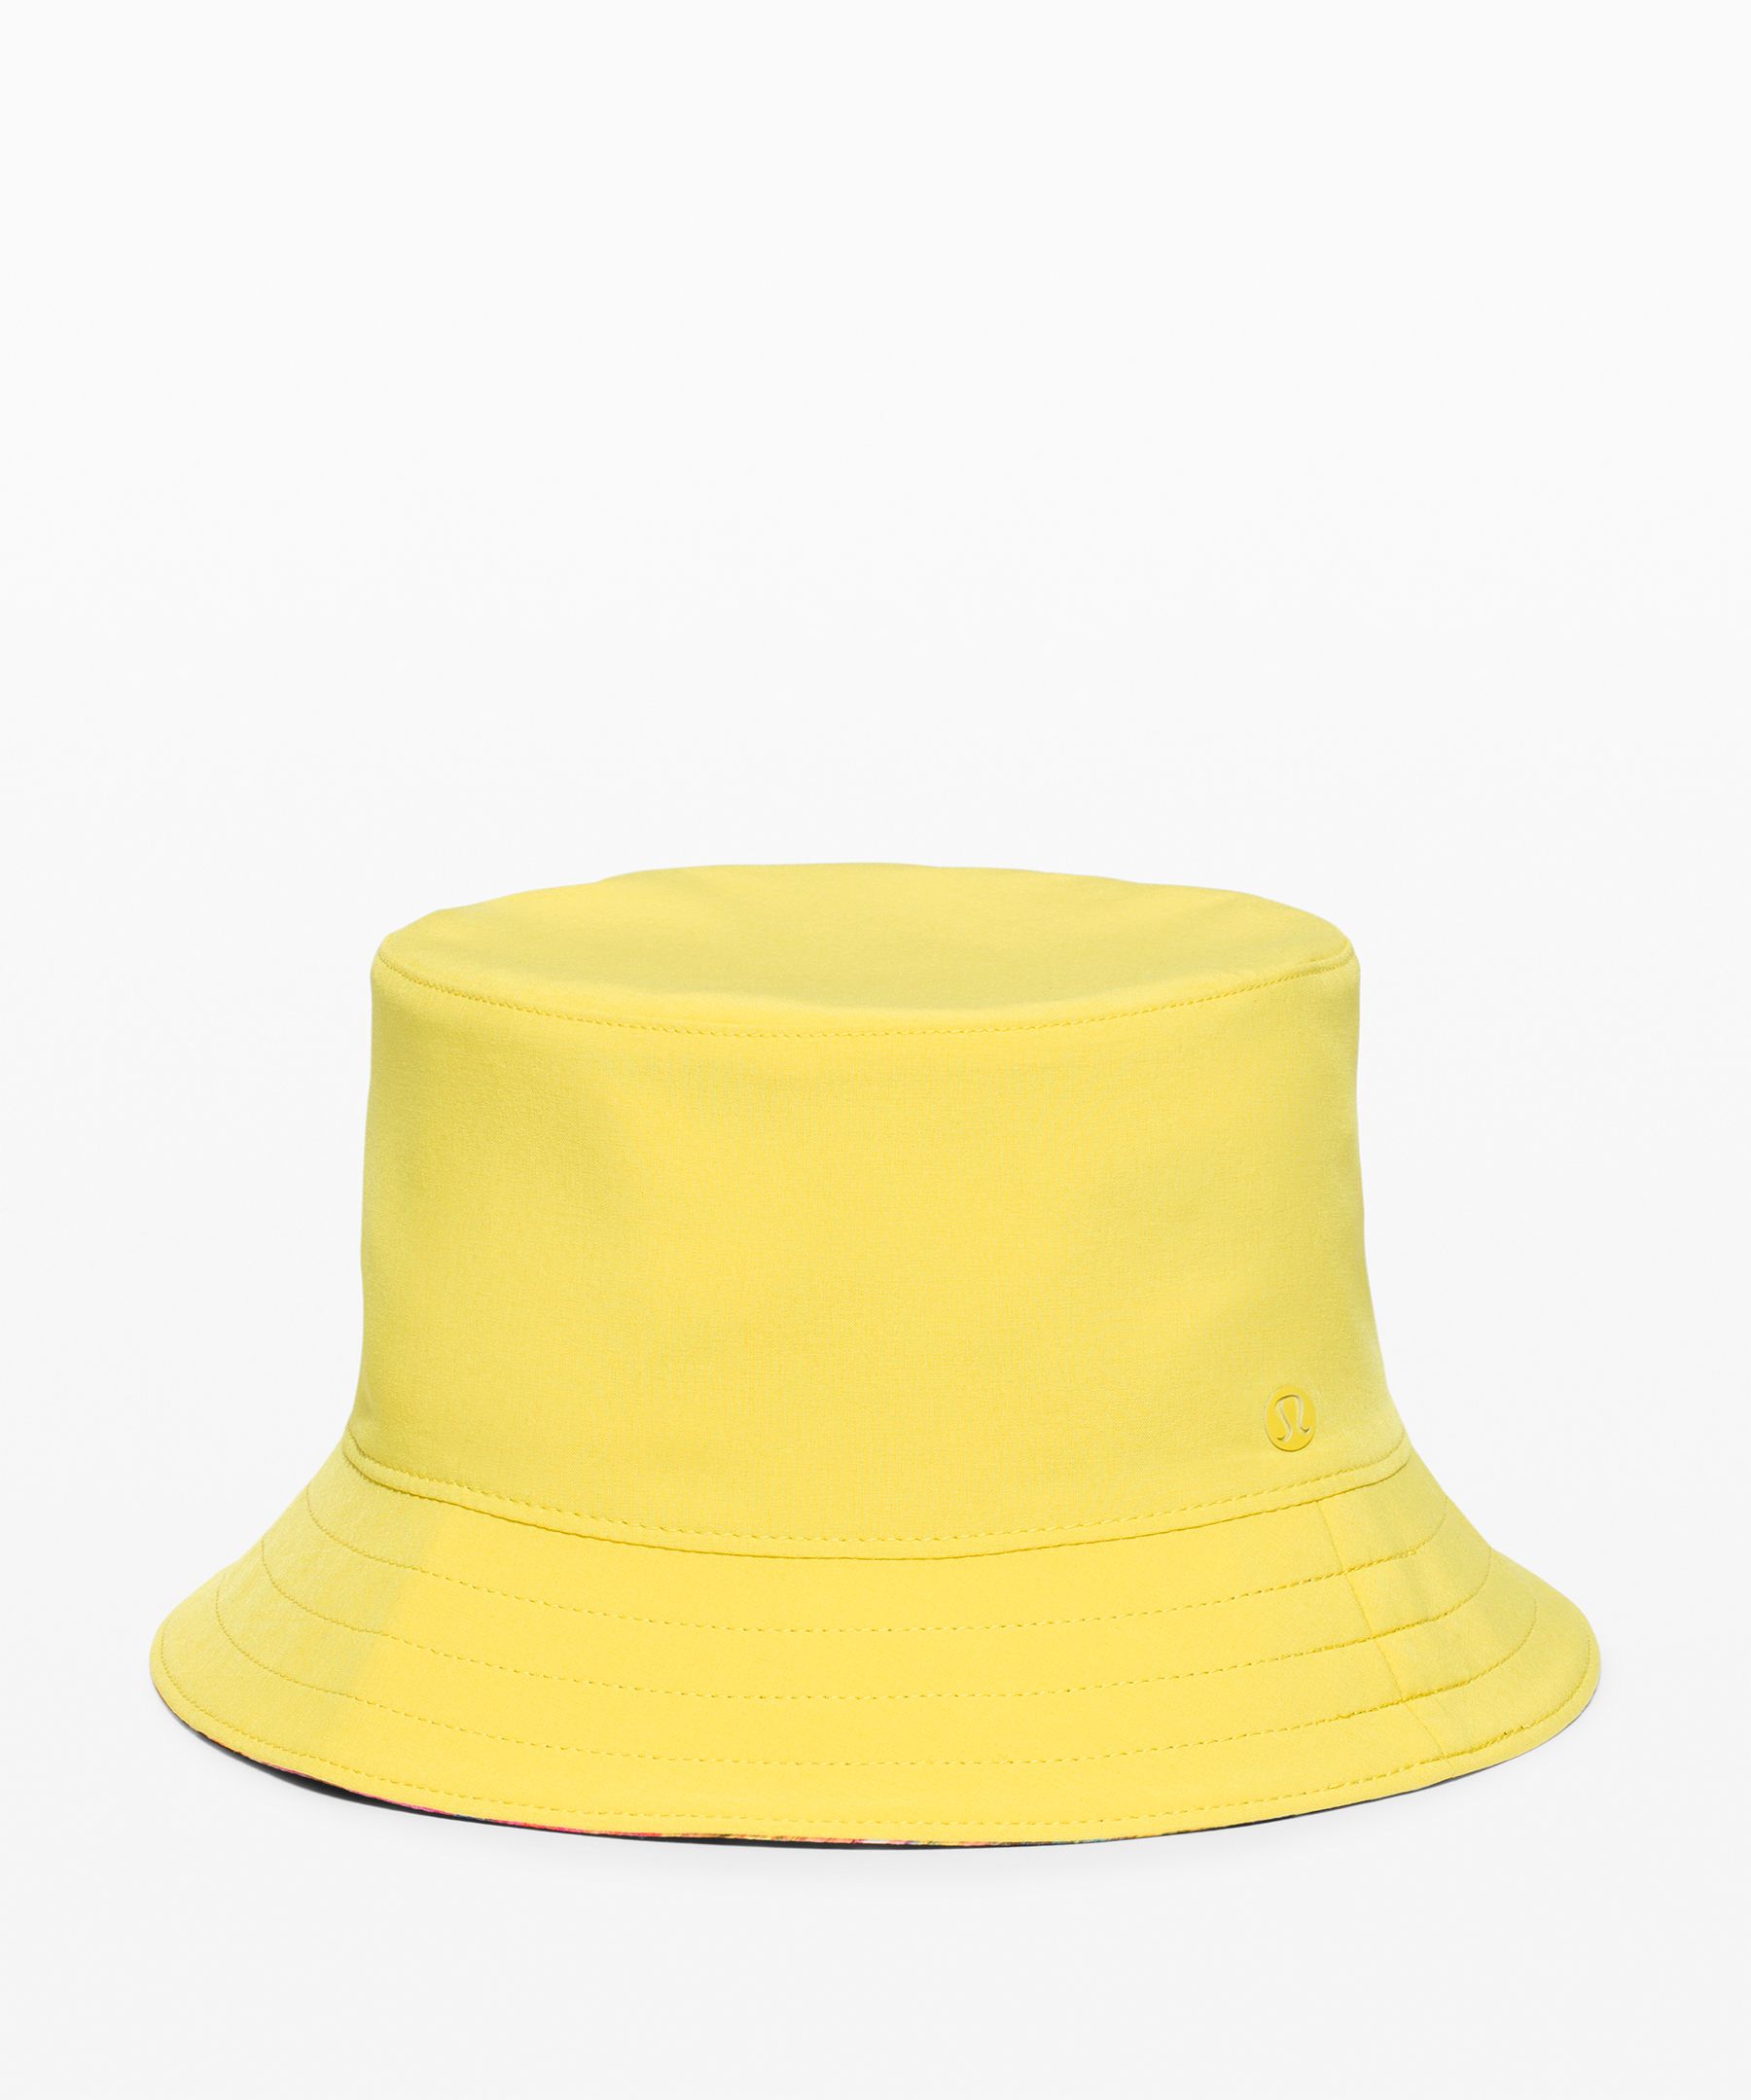 Lululemon Both Ways Bucket Hat In Yellow